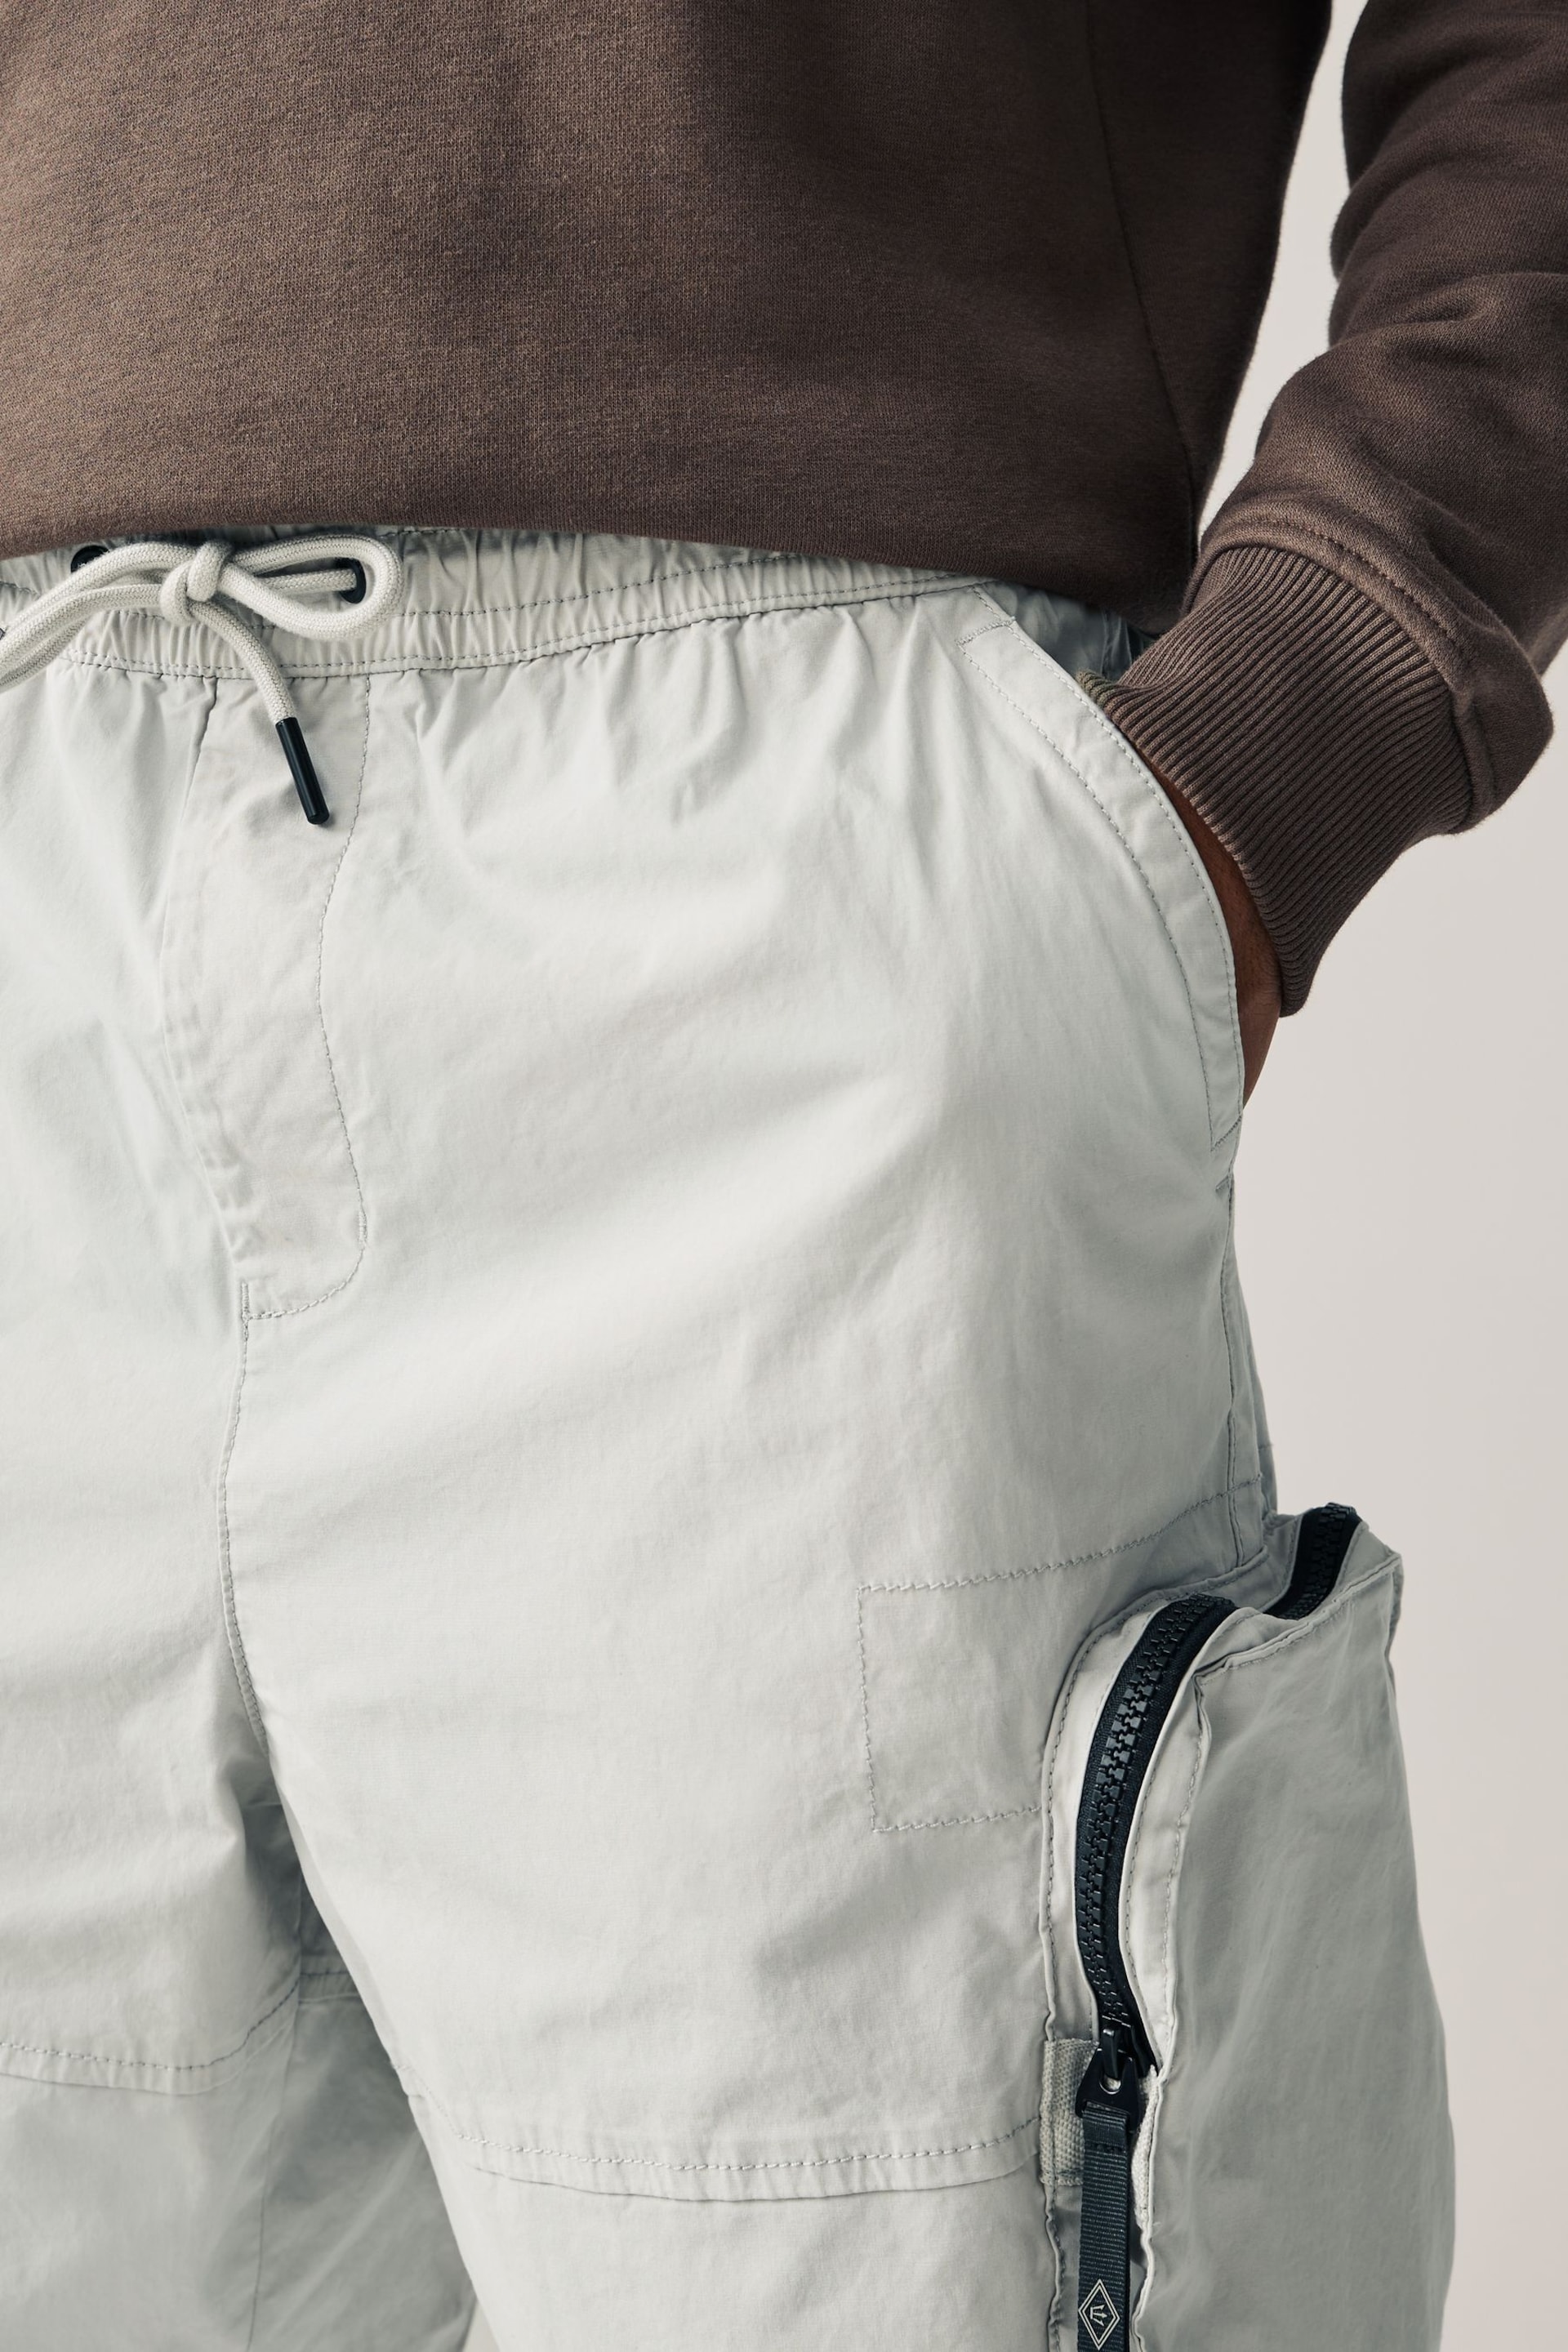 Grey Multi Pocket Cargo Shorts - Image 4 of 11